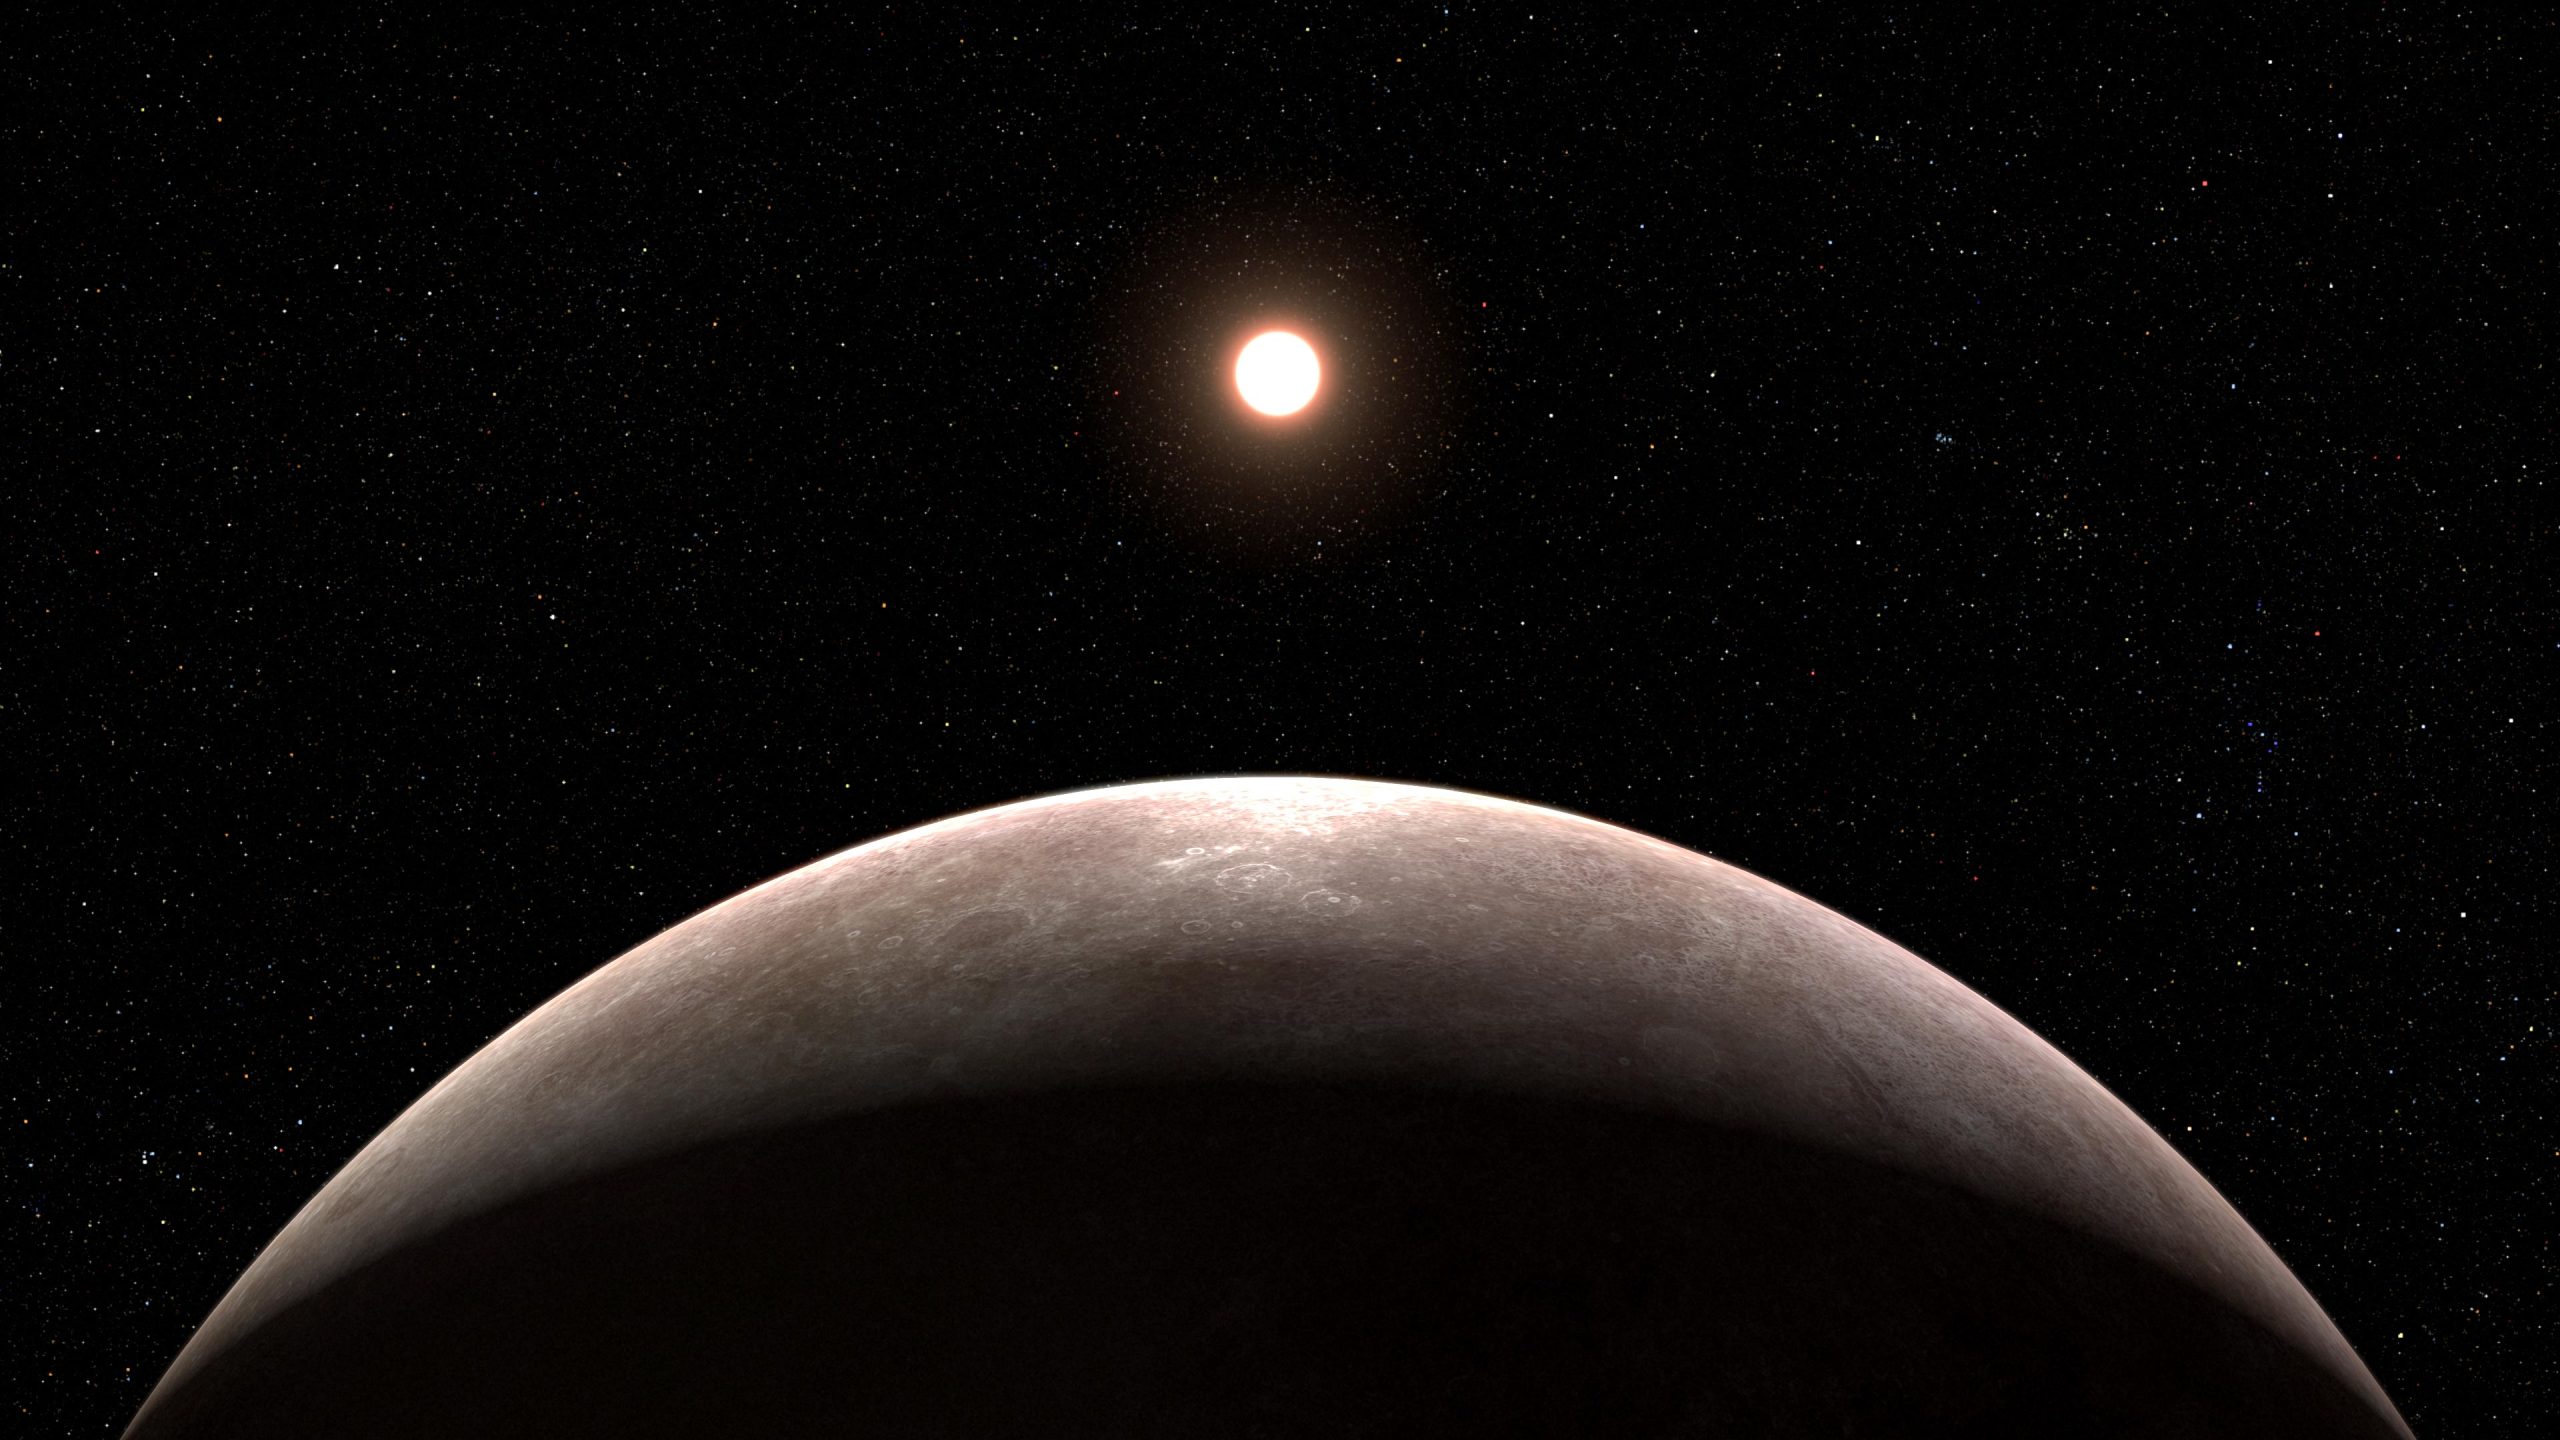 O Telescópio Espacial Webb da NASA confirma a existência de um exoplaneta rochoso do tamanho da Terra!